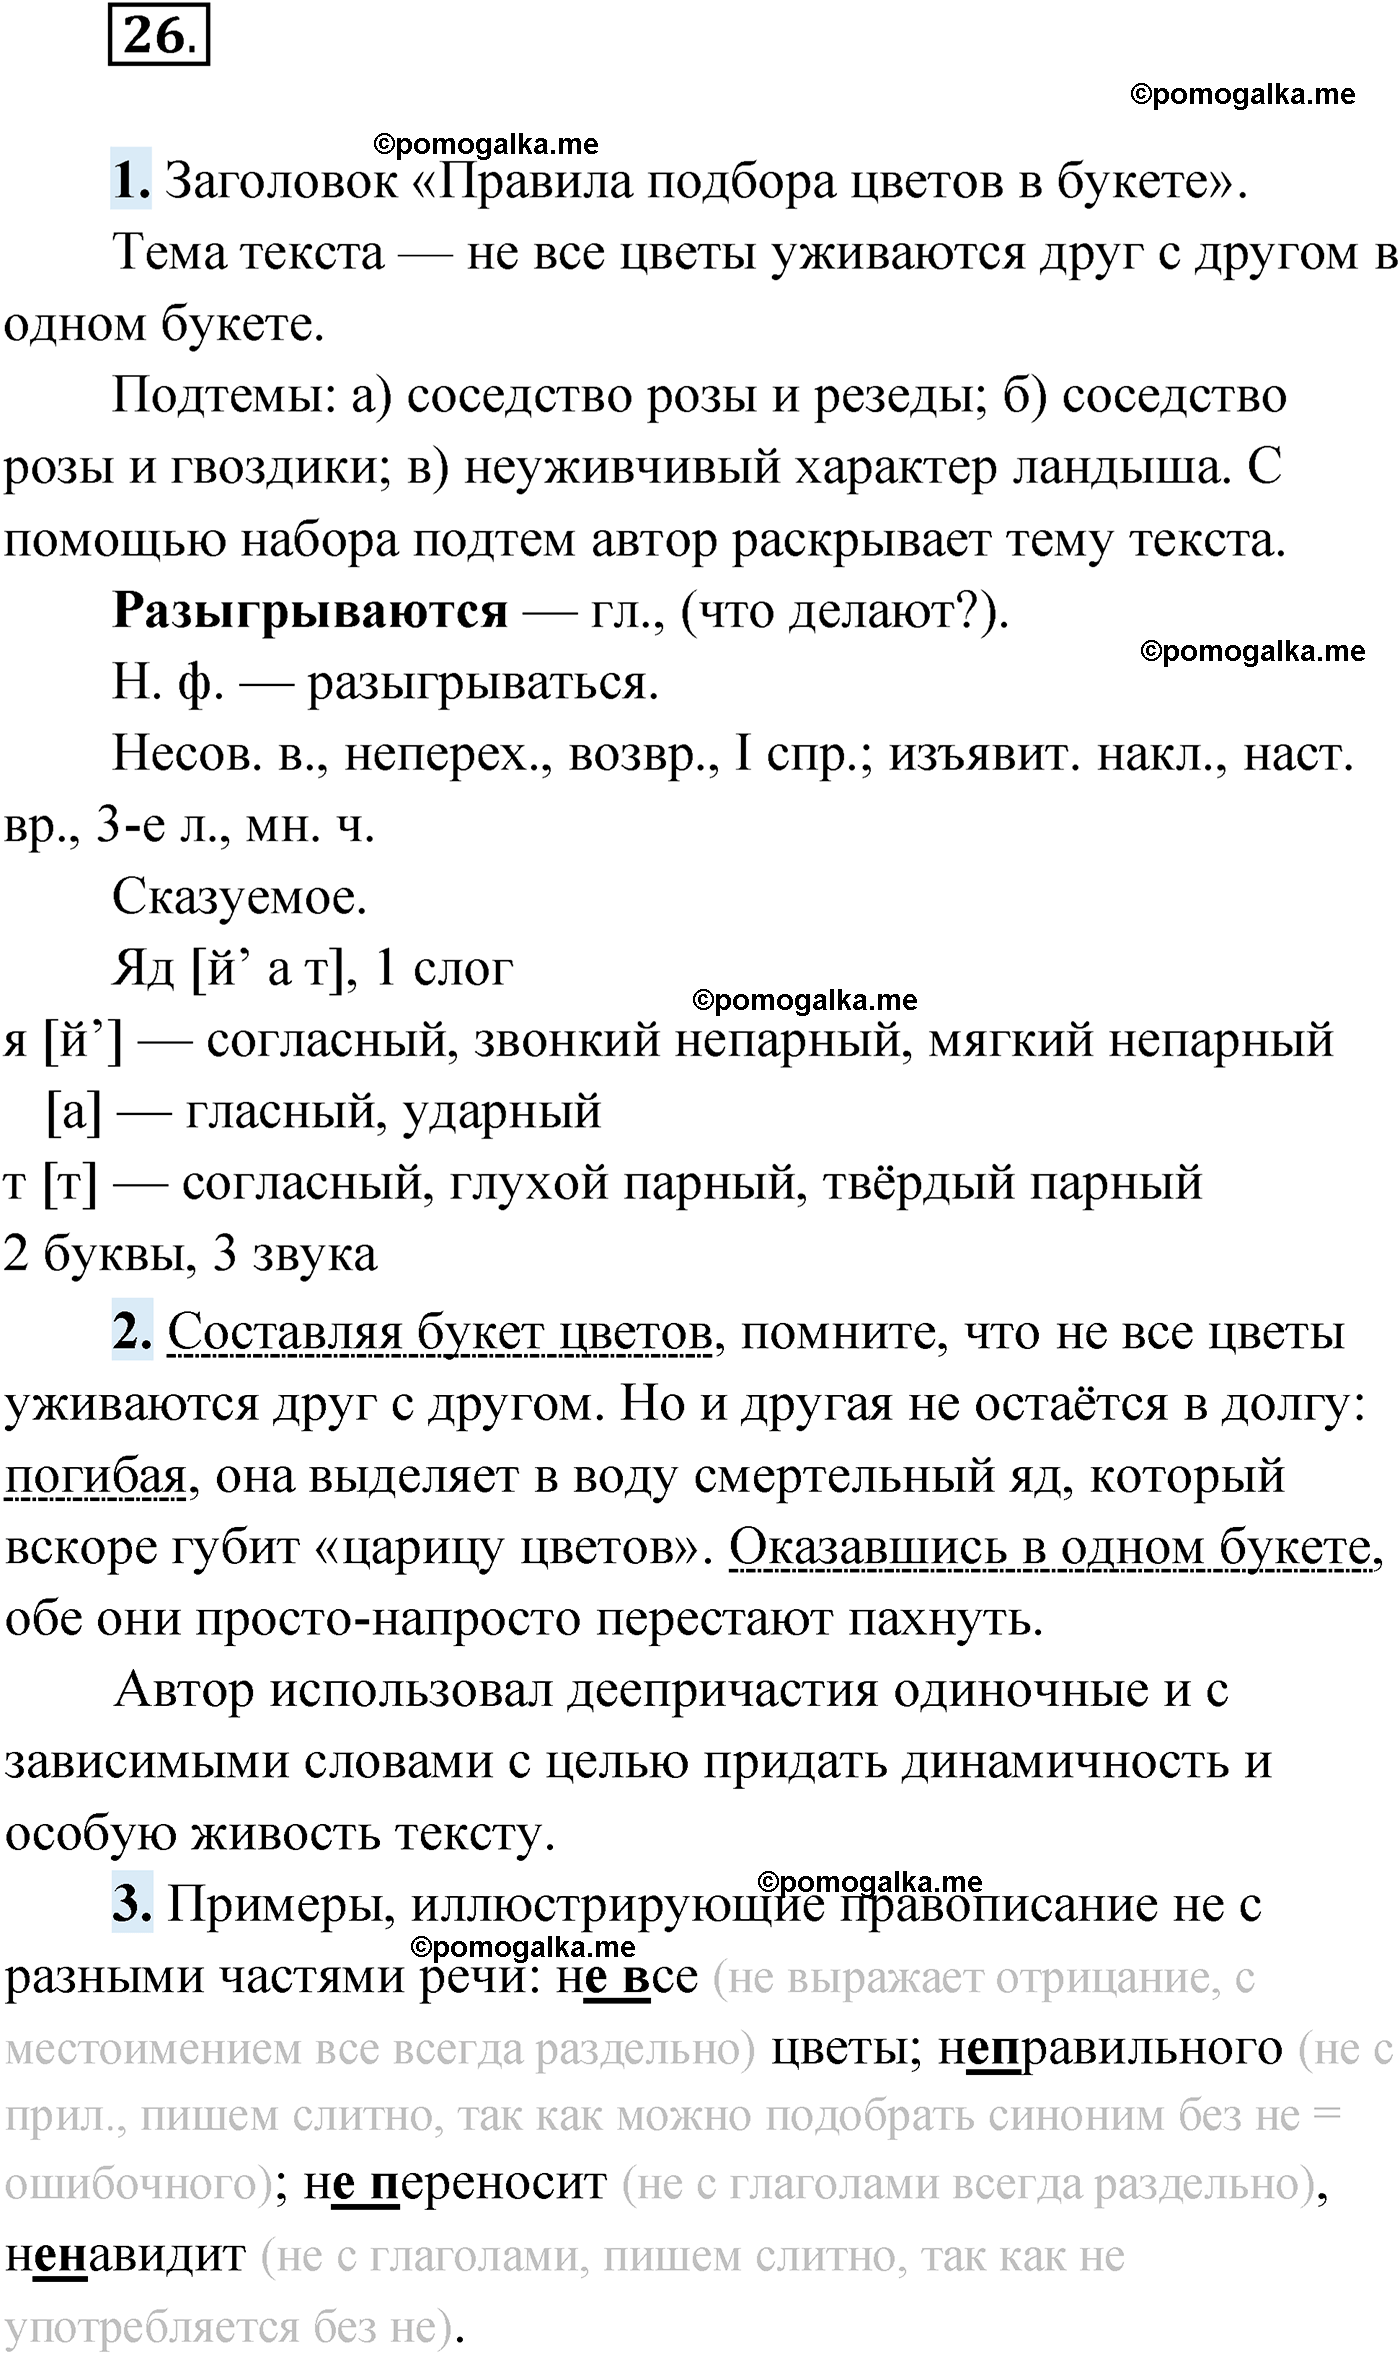 упражнение №26 русский язык 9 класс Мурина 2019 год